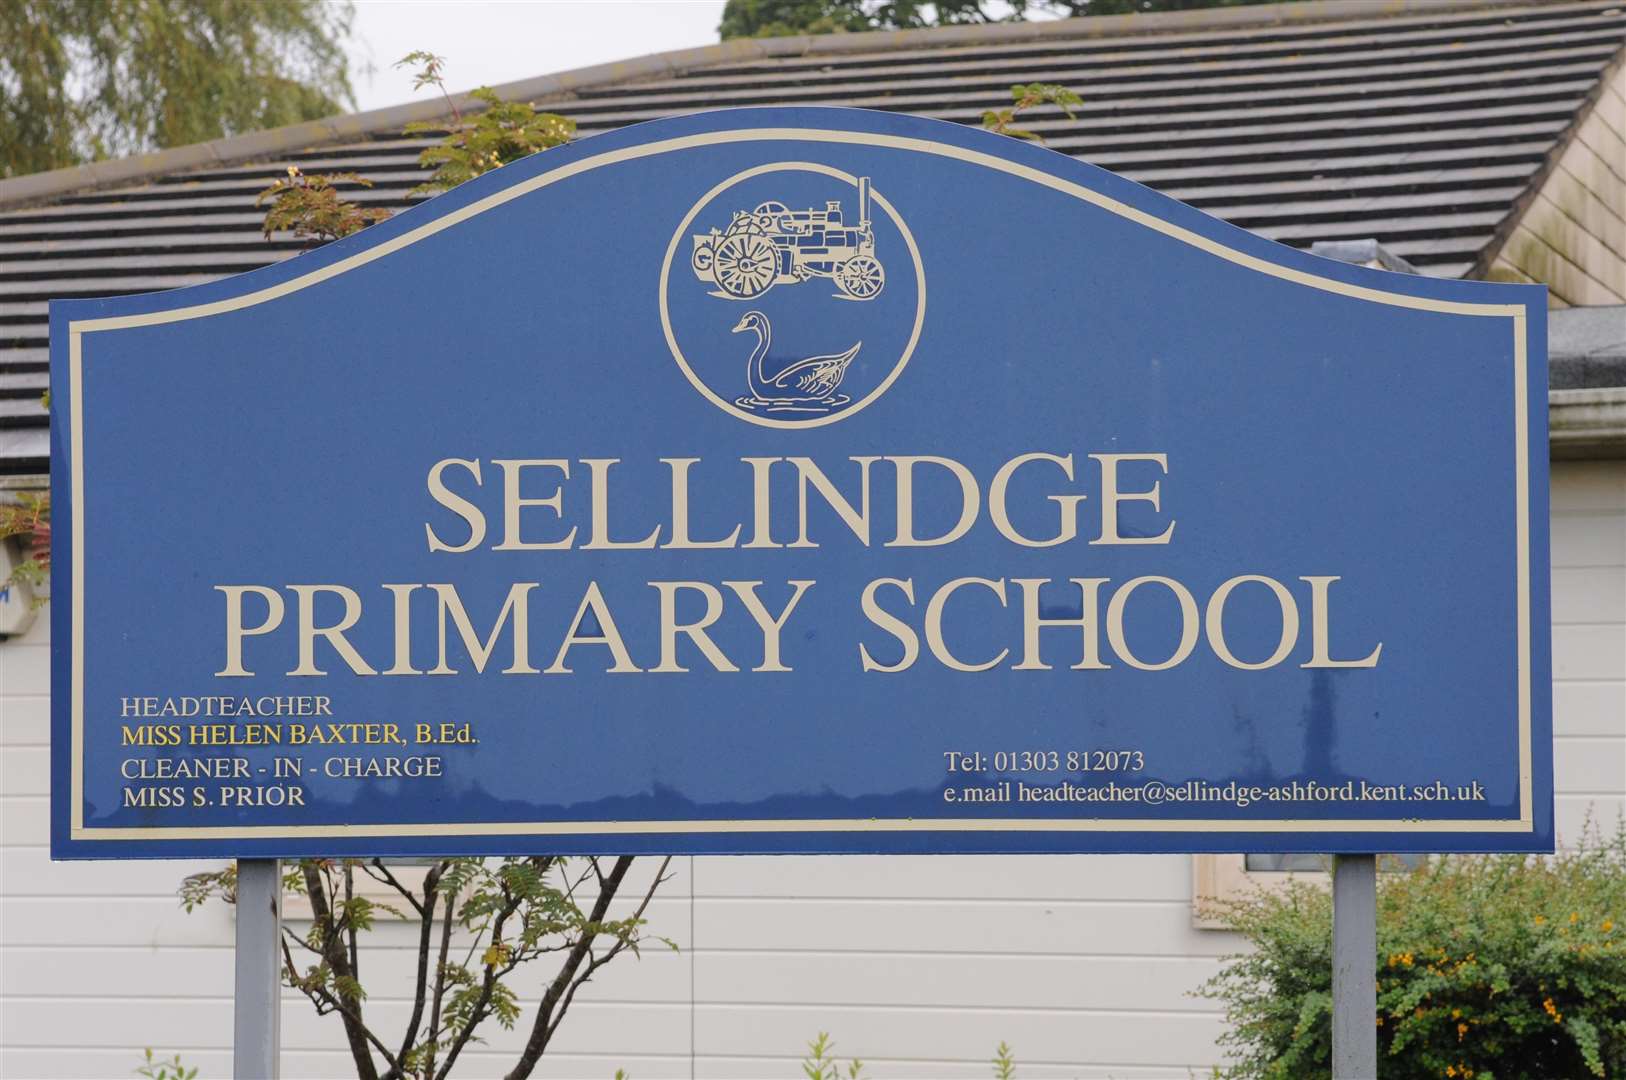 Sellindge Primary School